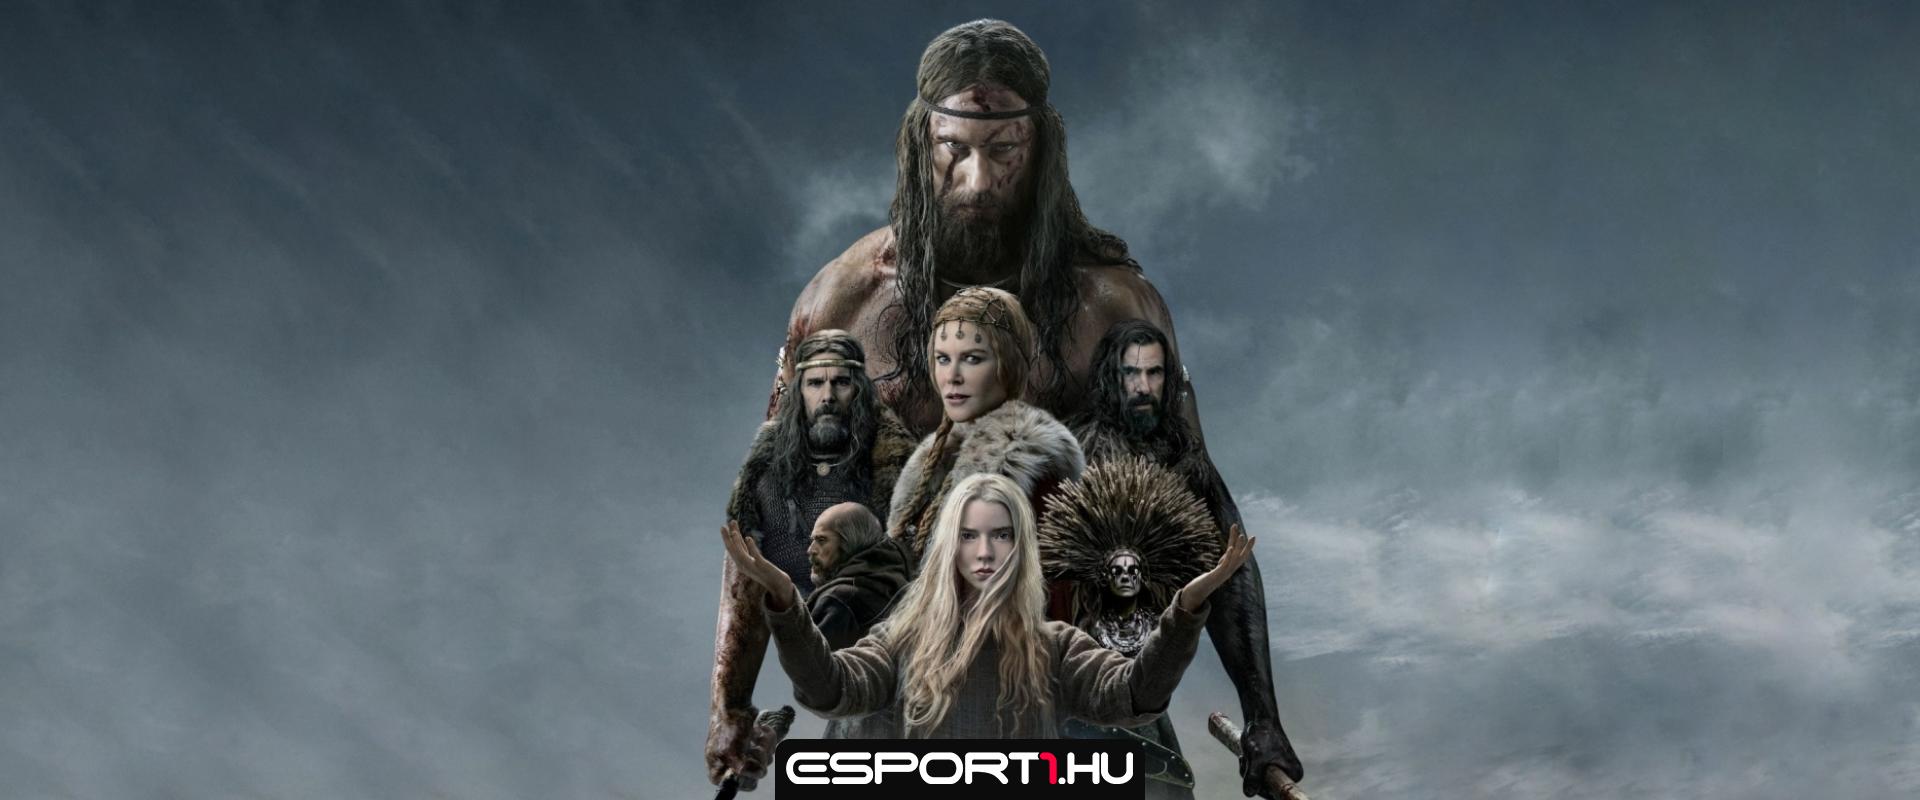 Vérszomjas vikingek  – Az északi filmkritika